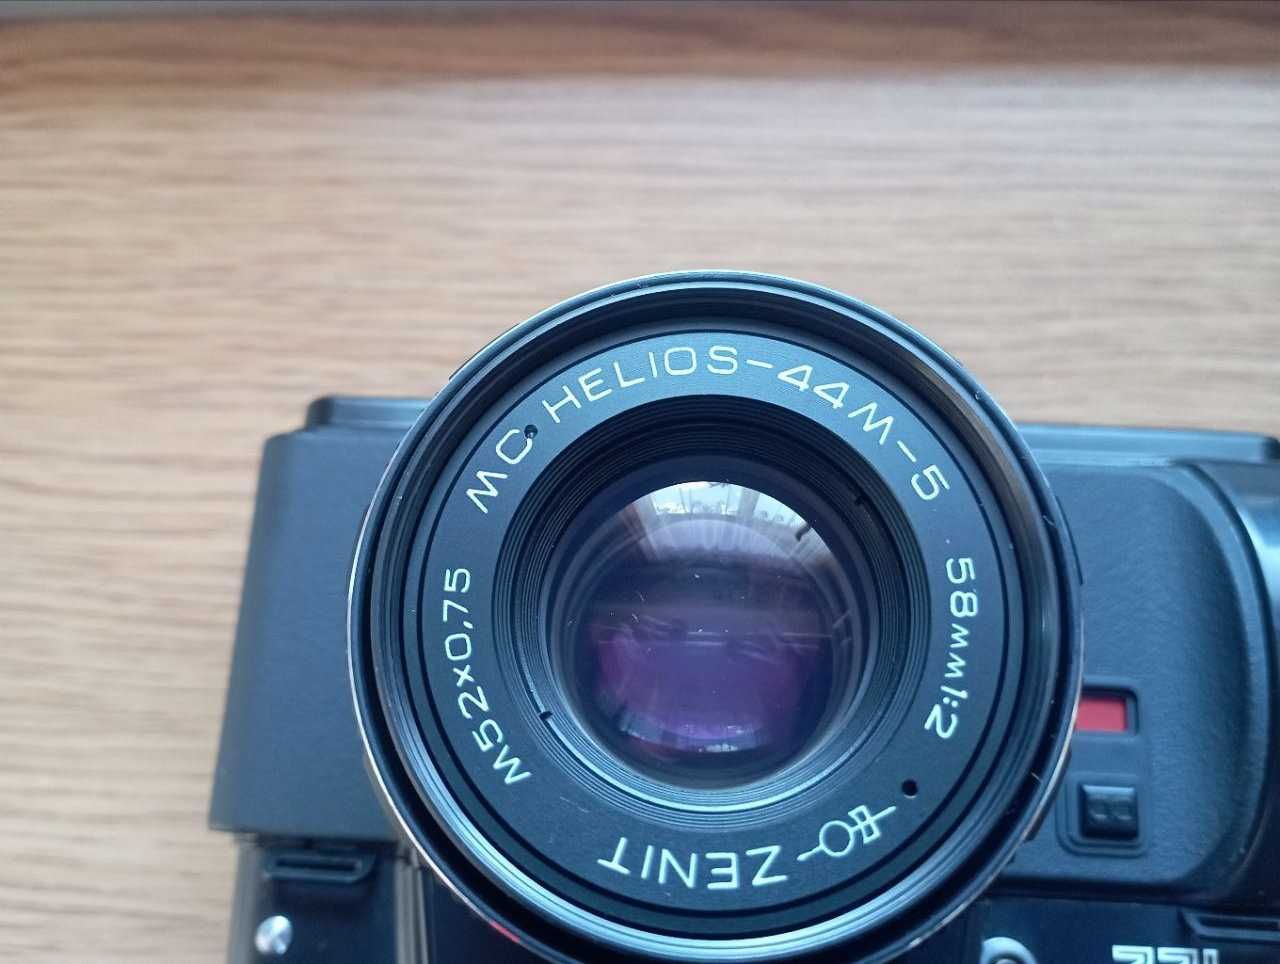 Новий фотоапарат Zenit 122 + Helios 44M-5 + Об'єктив Jupiter-21M 4/200